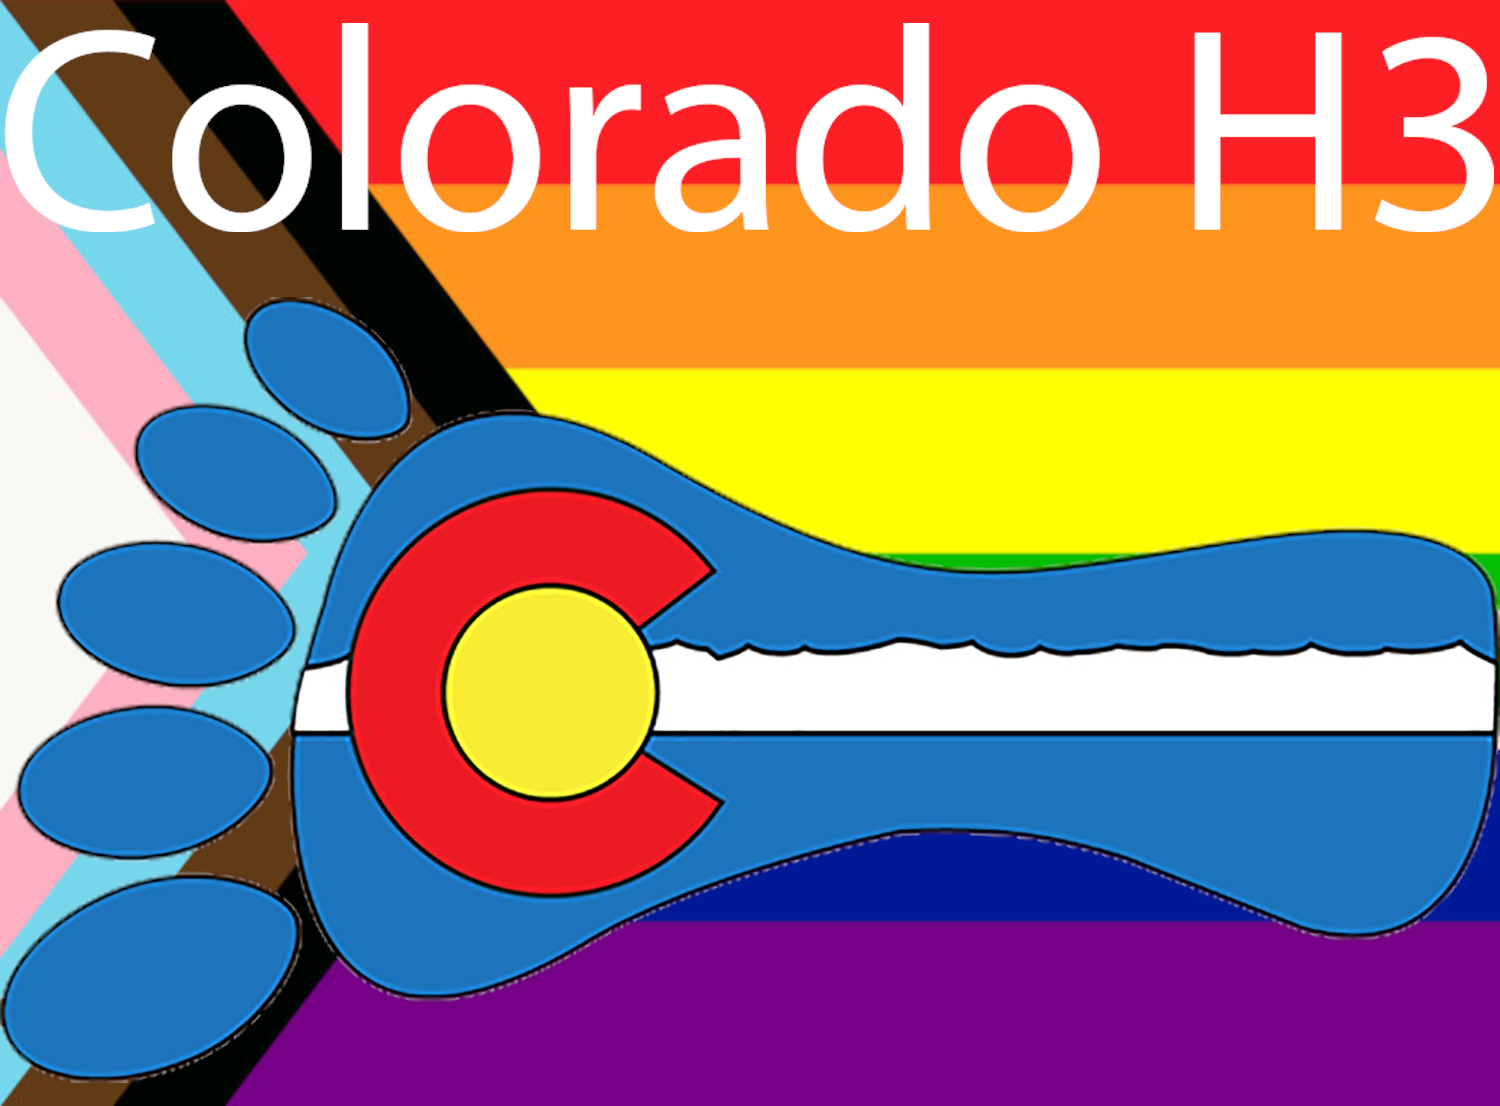 Colorado H3